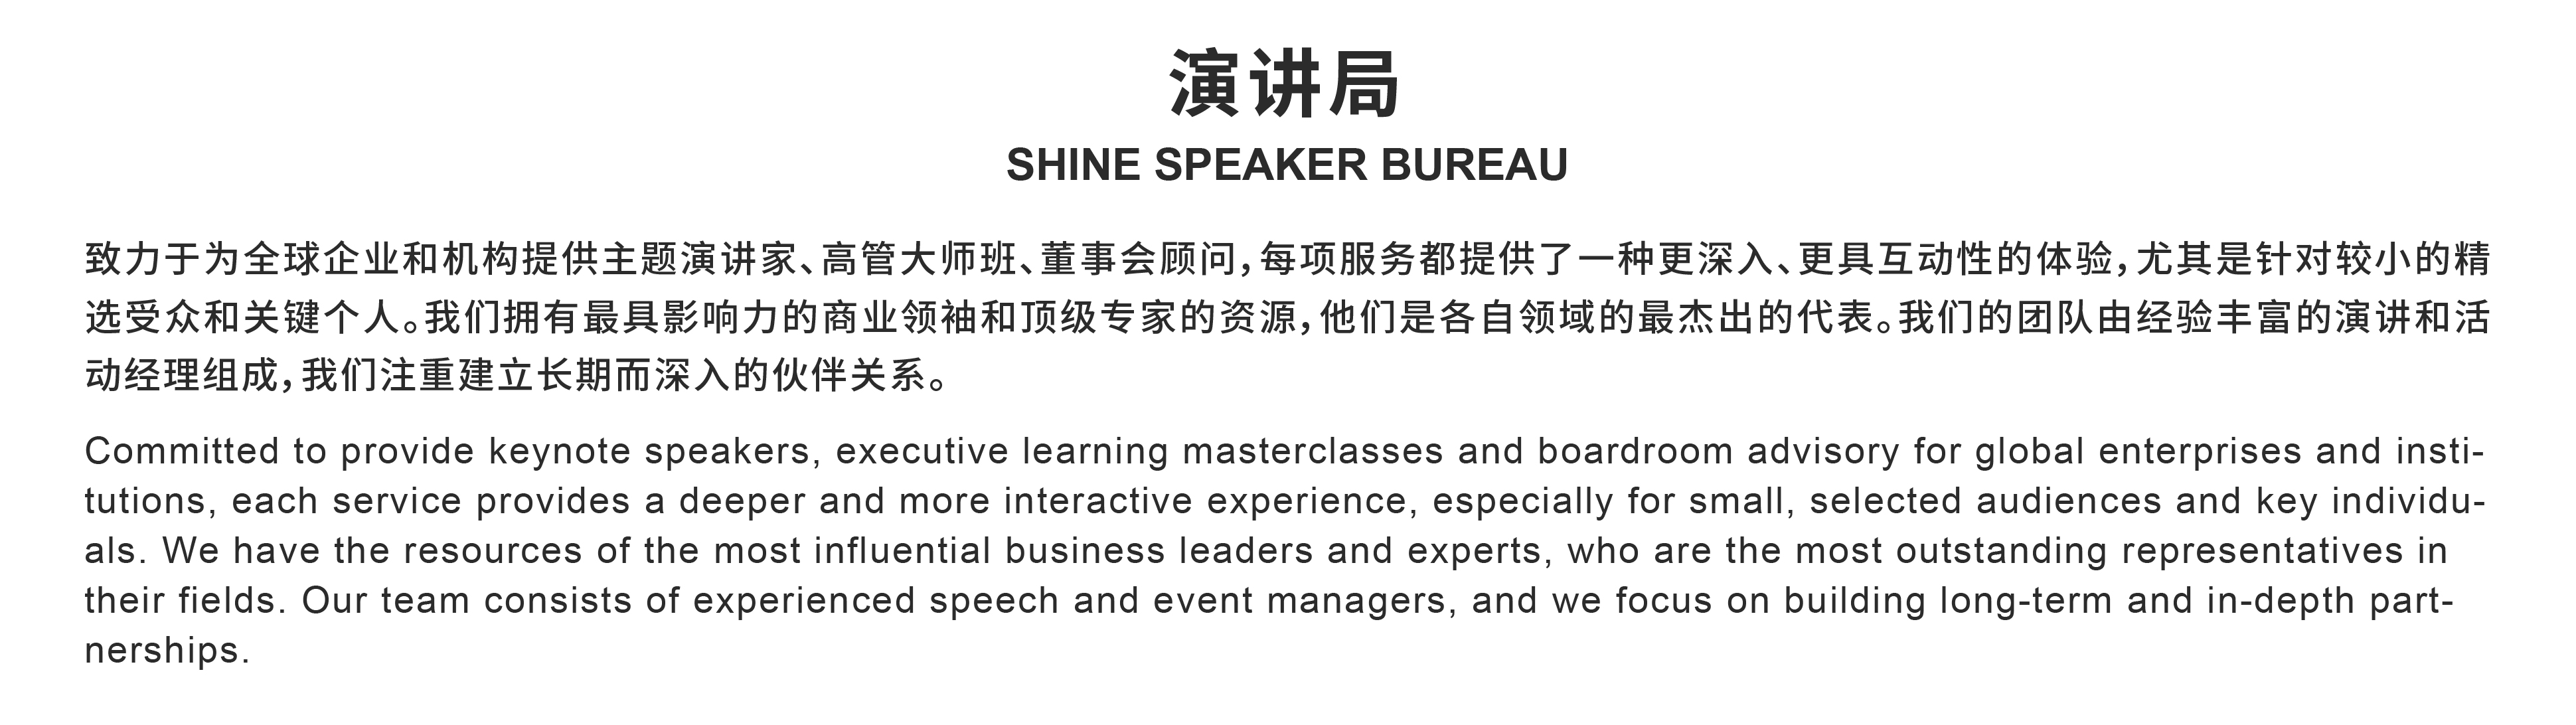 Shine Speaker Bureau